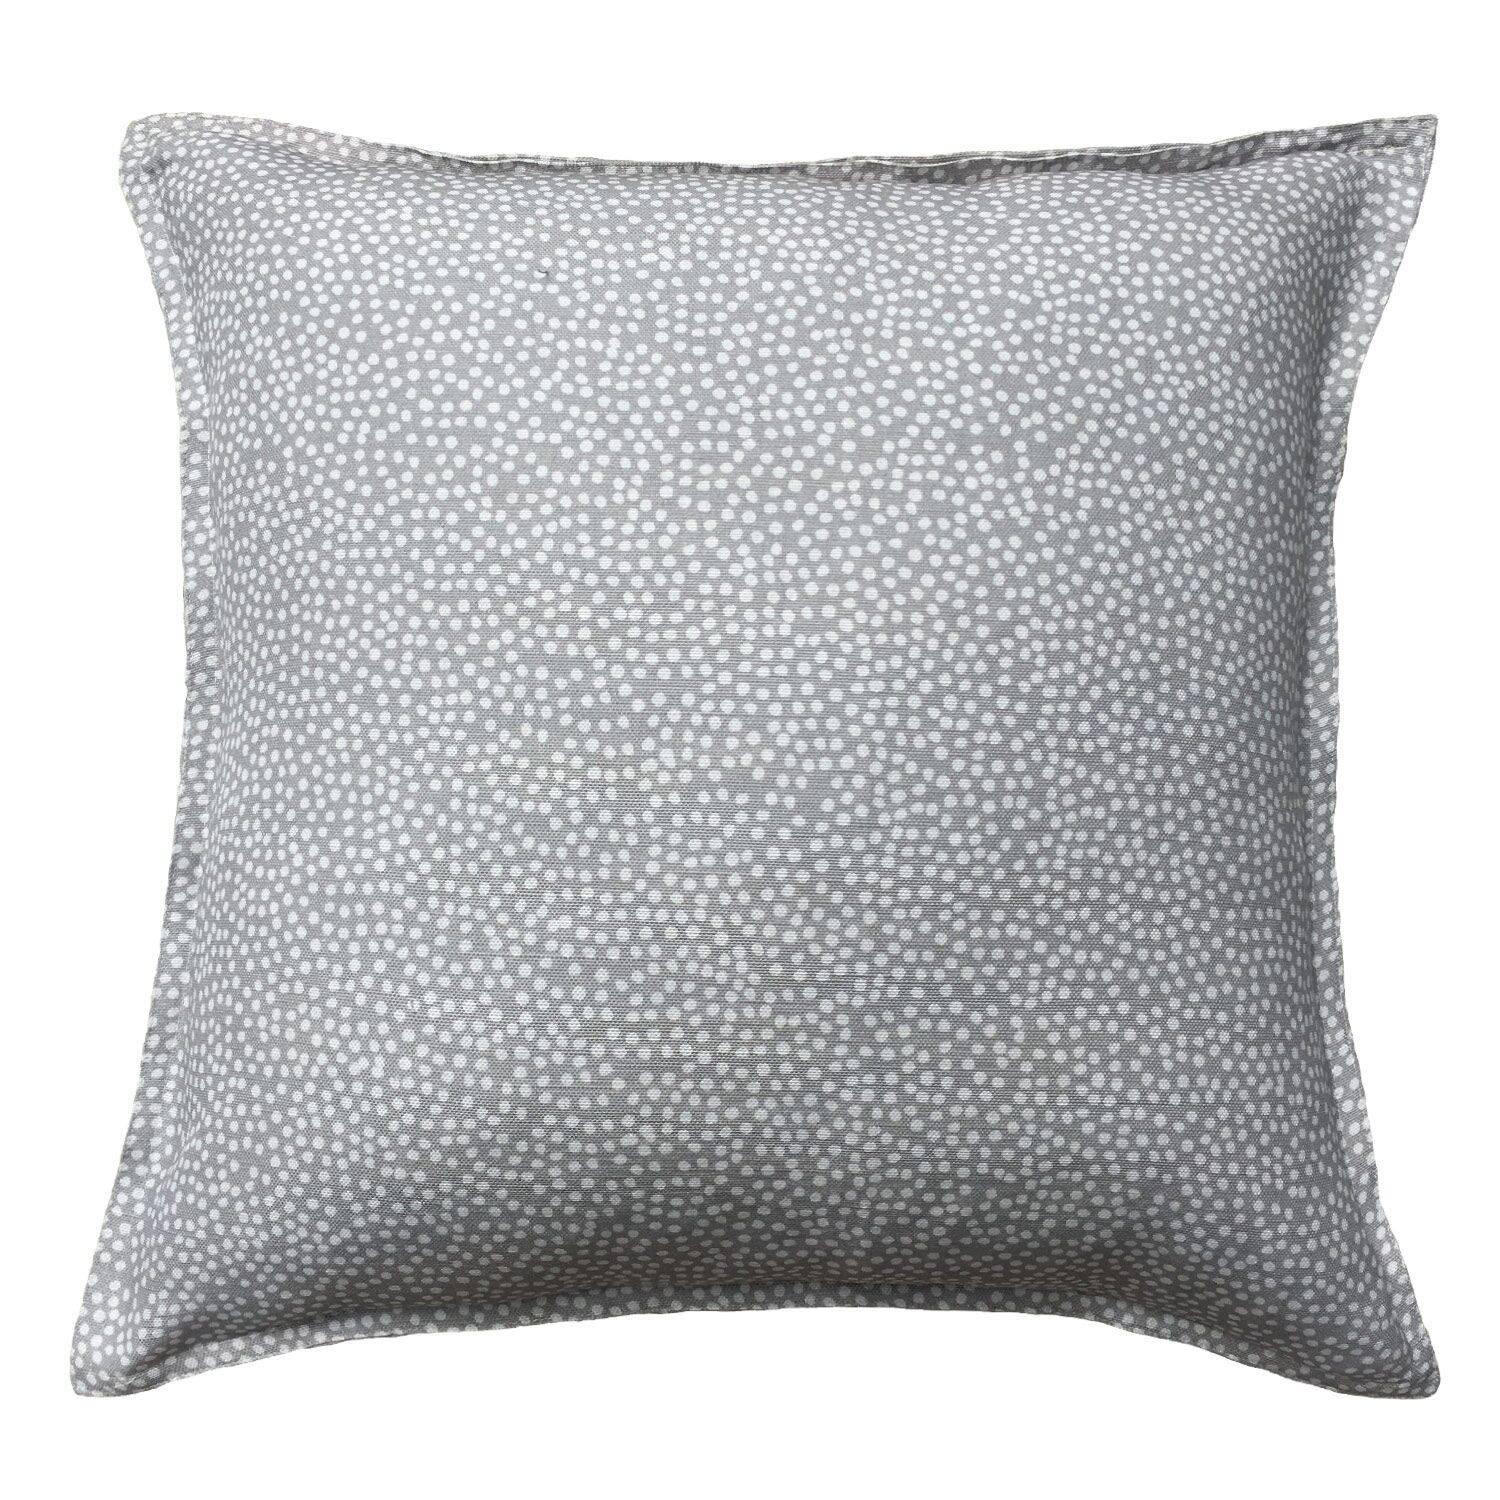 Fog Freckles Cotton Linen Pillow For Sale